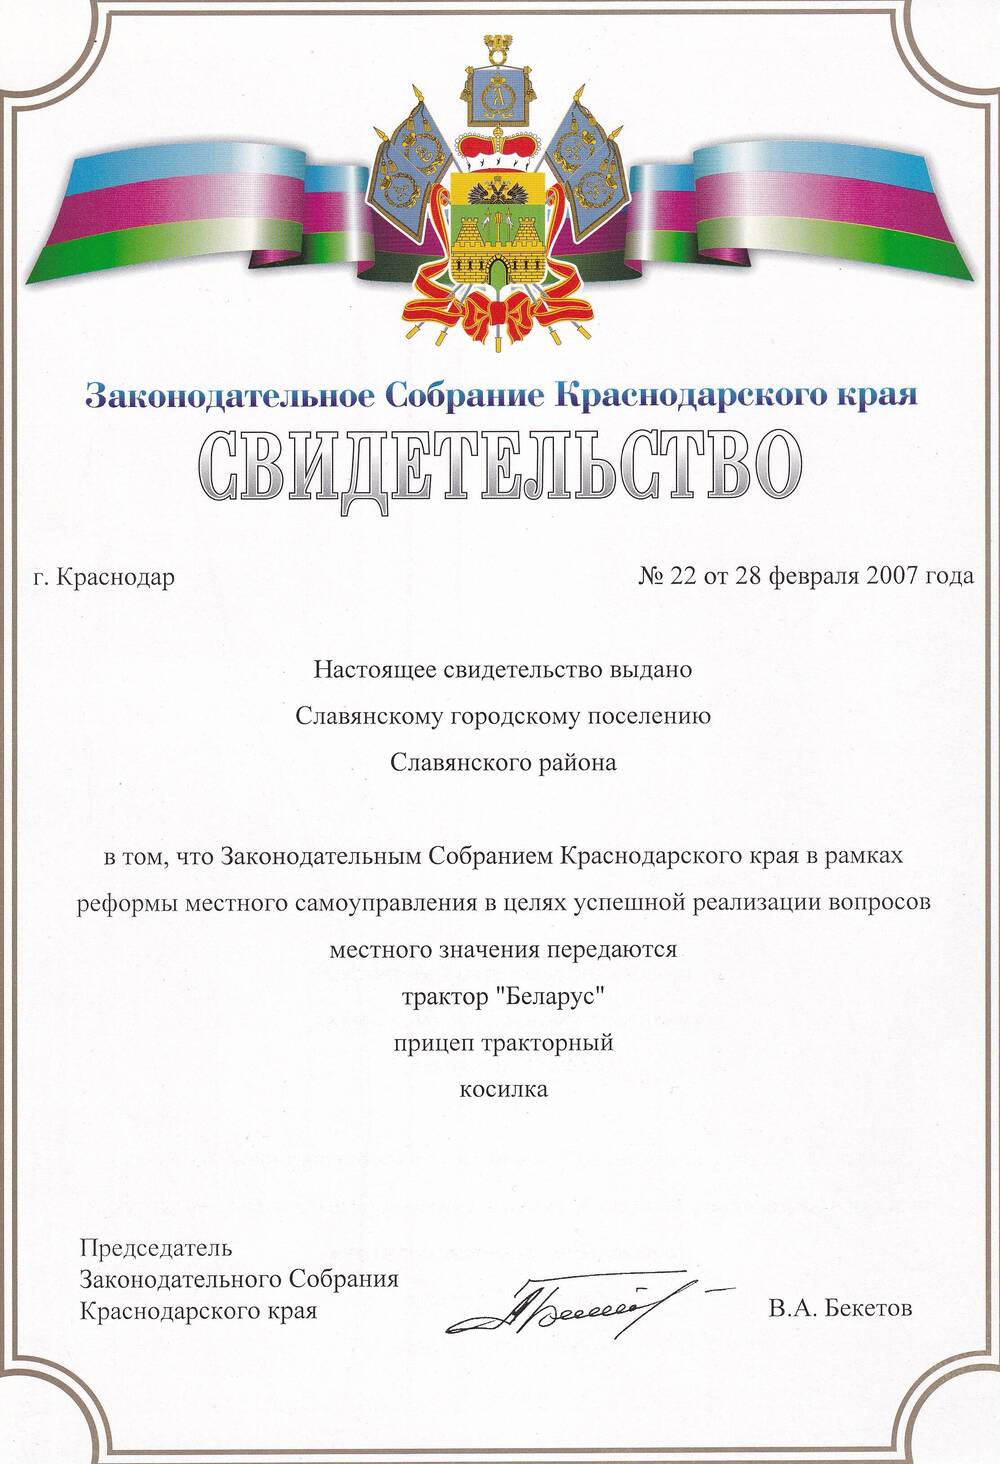 Свидетельство №22 от 28 февраля 2007 года Законодательного Собрания Краснодарского края Славянскому городскому поселению Славянского района.